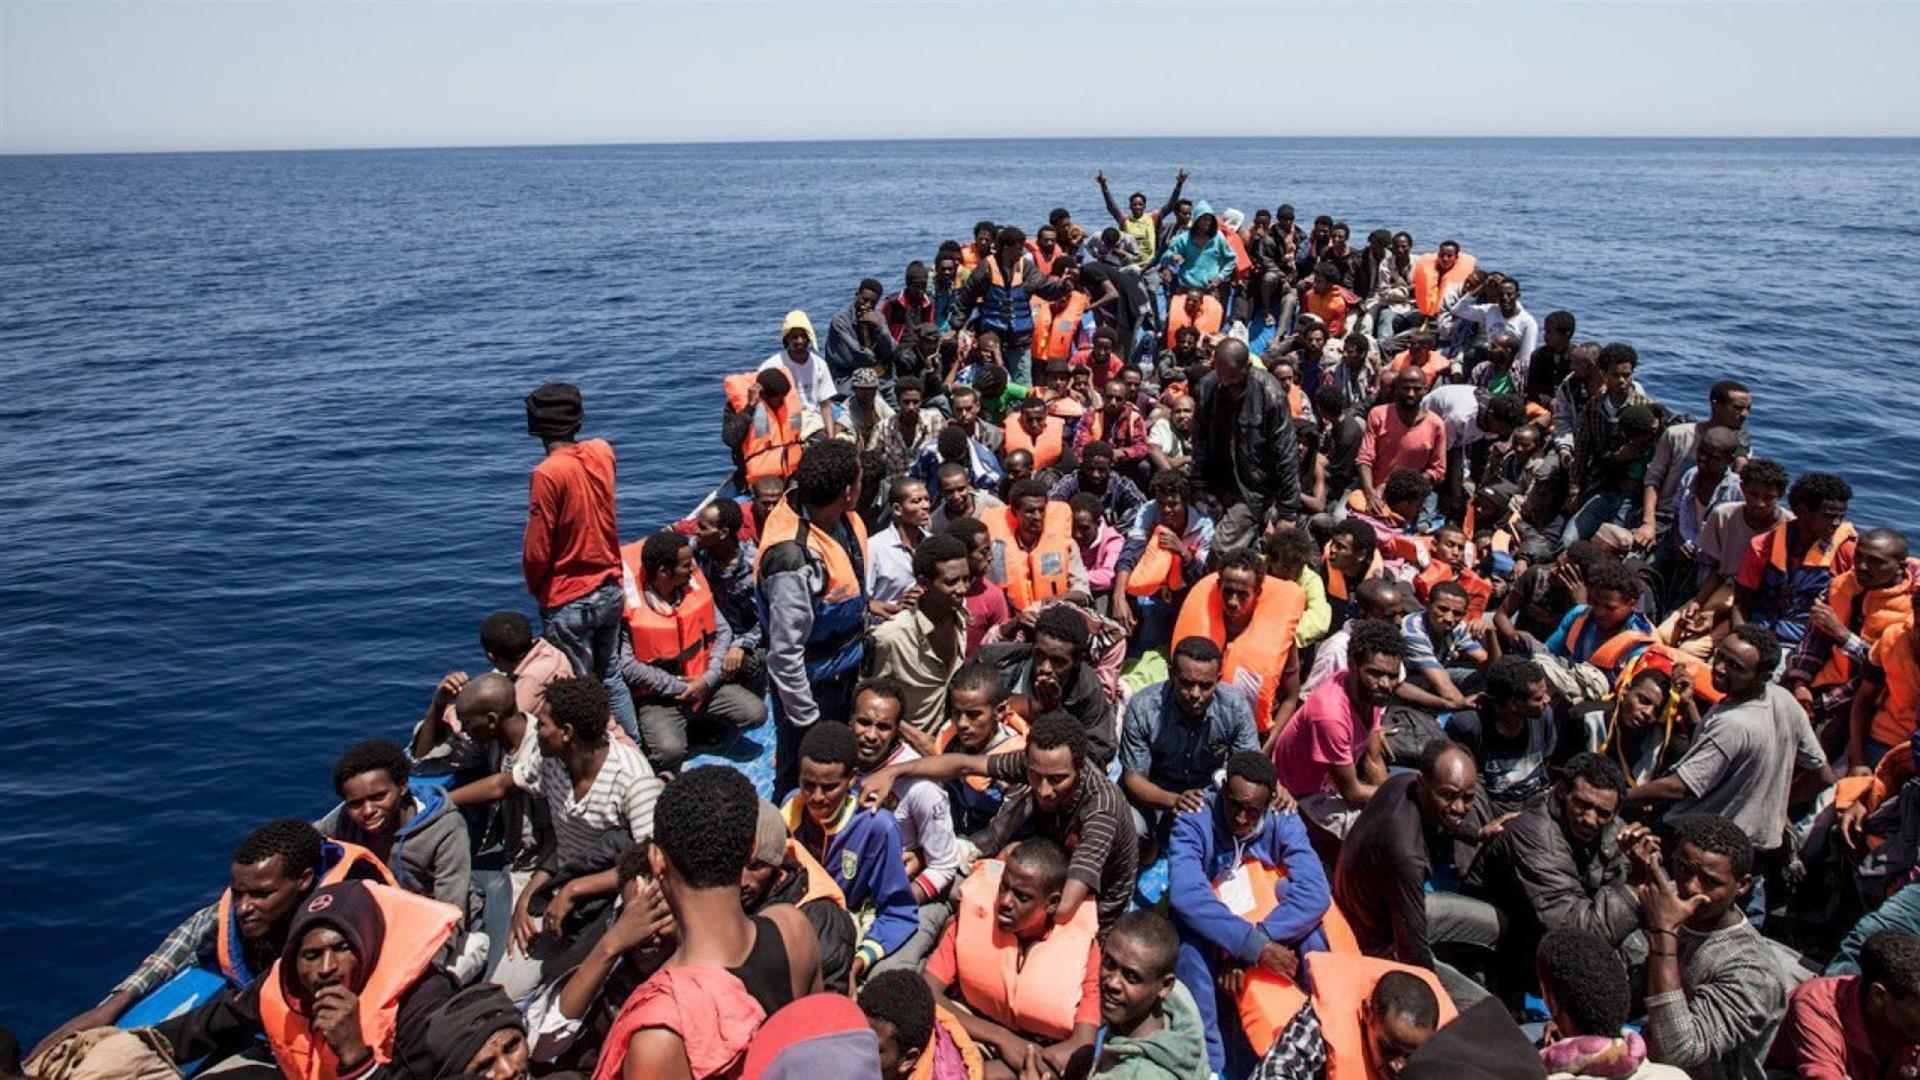 Nell’ultimo giorno del 2018, l’UNHCR sollecita una rapida soluzione per i rifugiati e i migranti bloccati nel Mar Mediterraneo